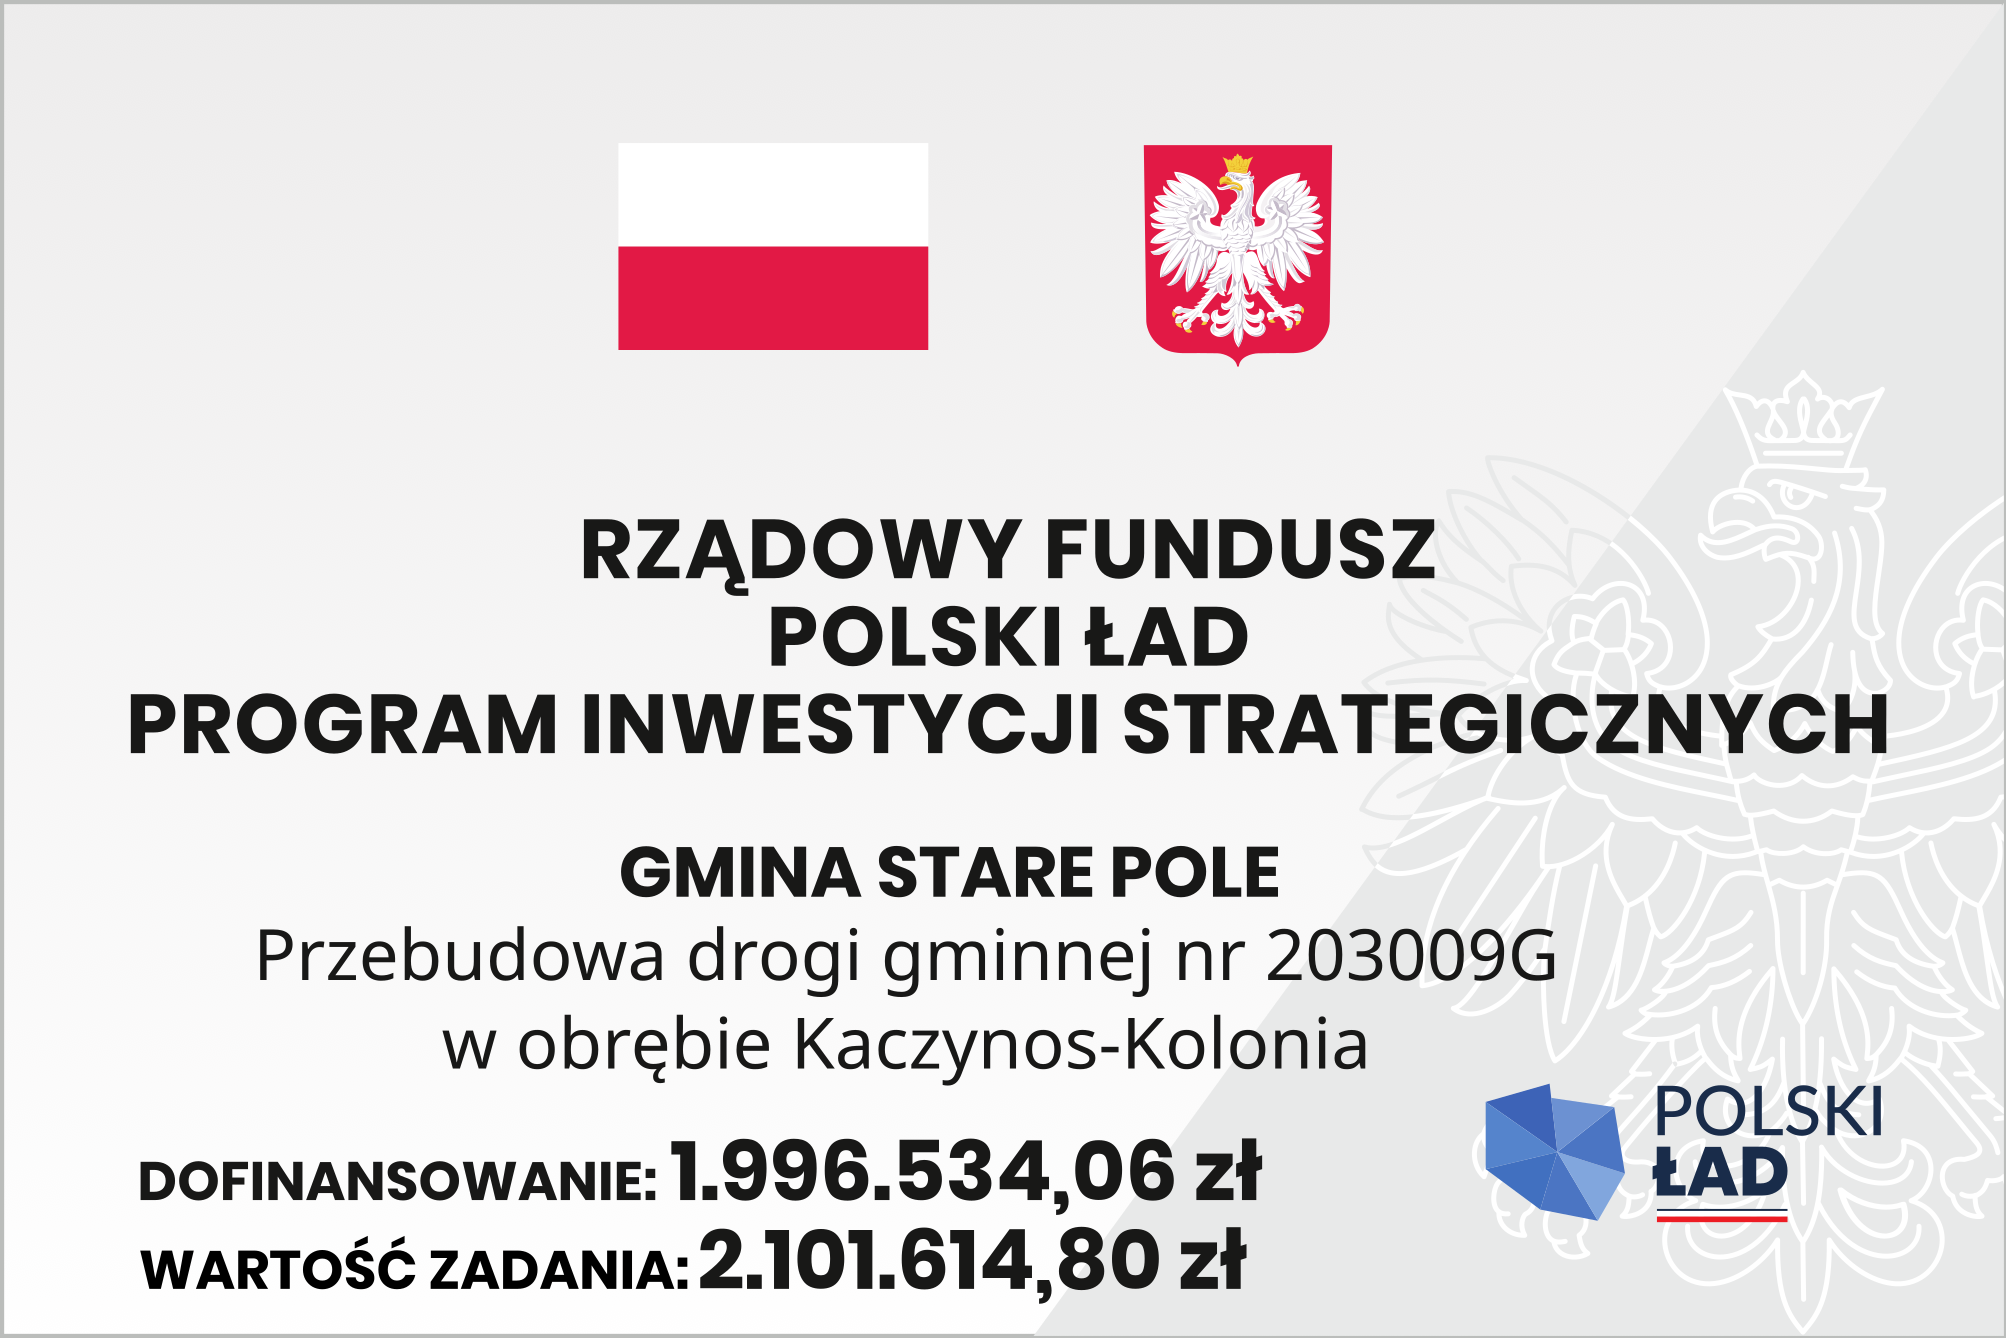 Rządowy Fundusz Polski Ład Program Inwestycji Strategicznych